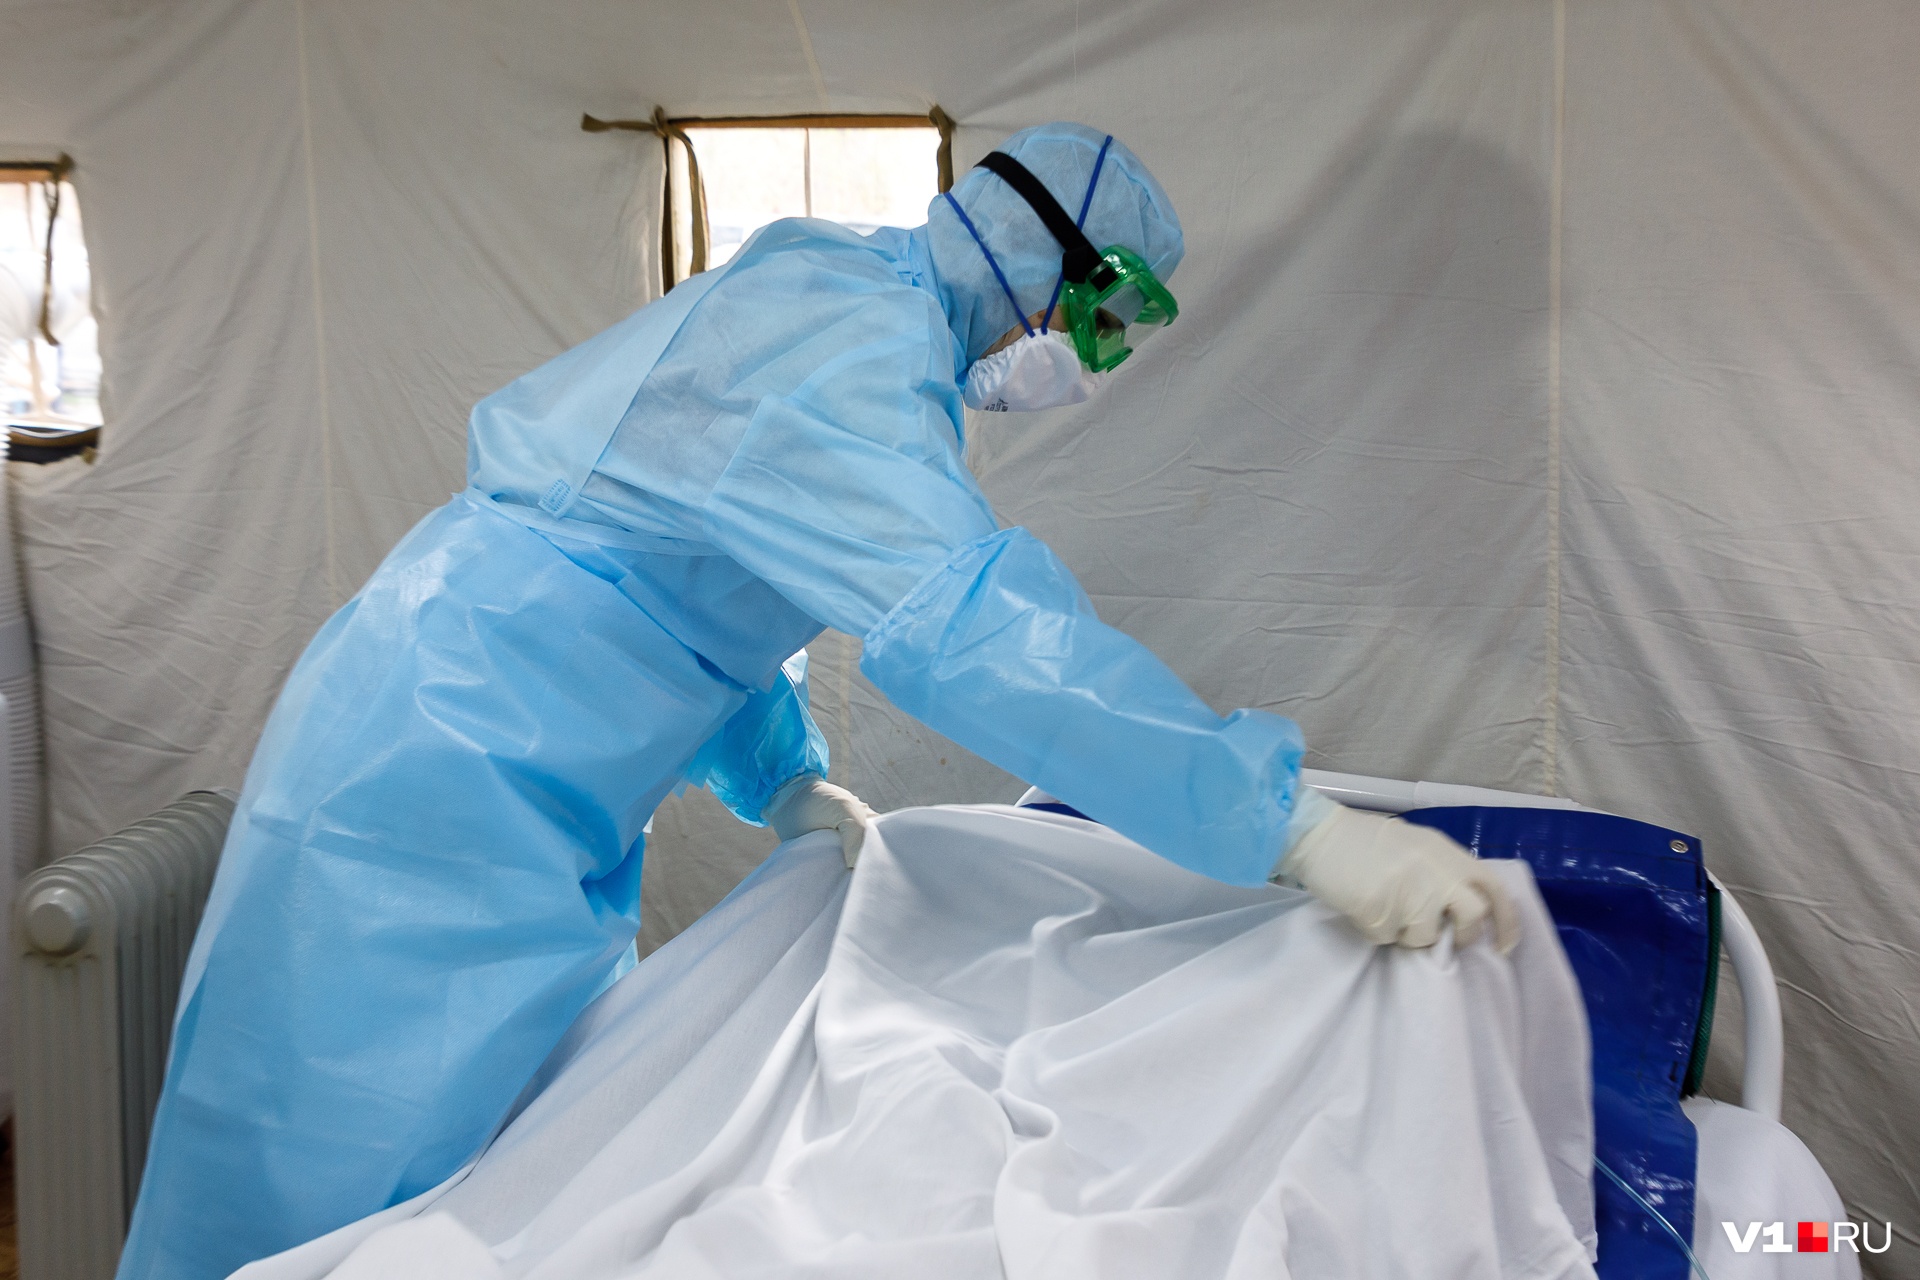 Четвертый пациент с коронавирусом скончался в Тюмени: это 61-летняя женщина